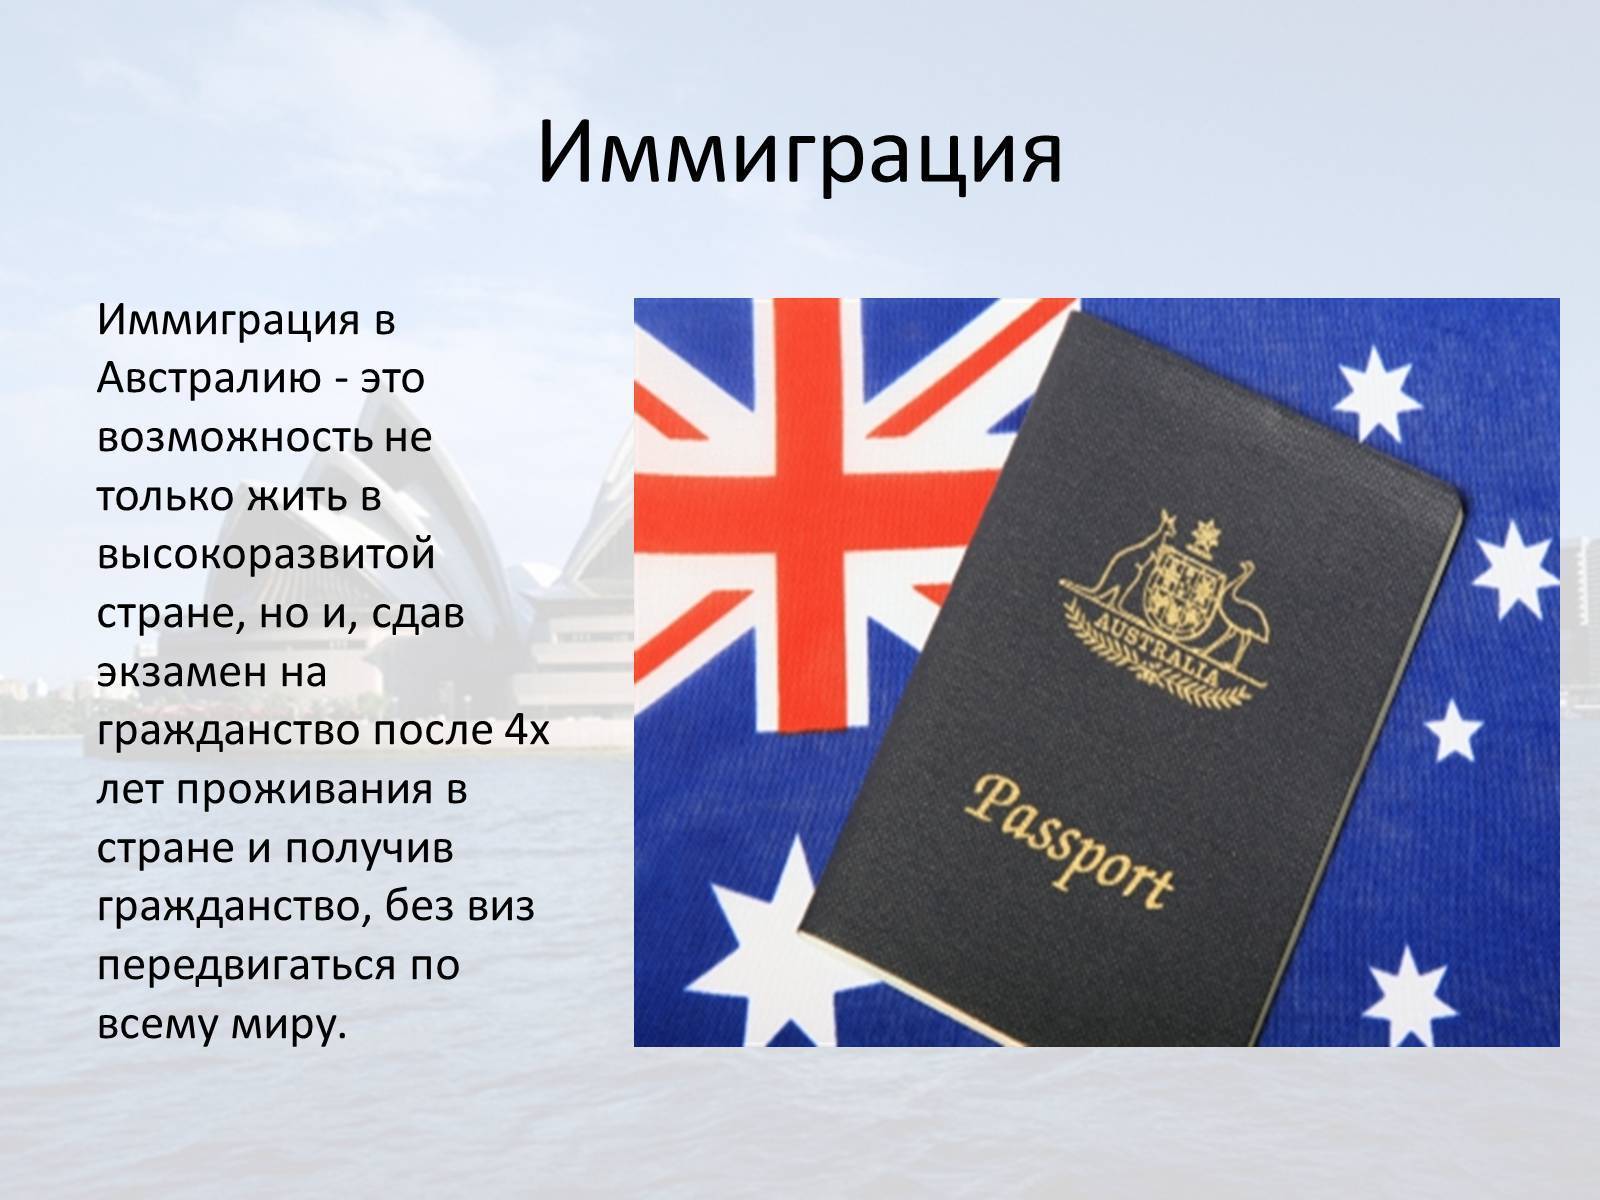 Иммиграция в австралию, получить пмж или вид на жительство, эмиграция в австралию